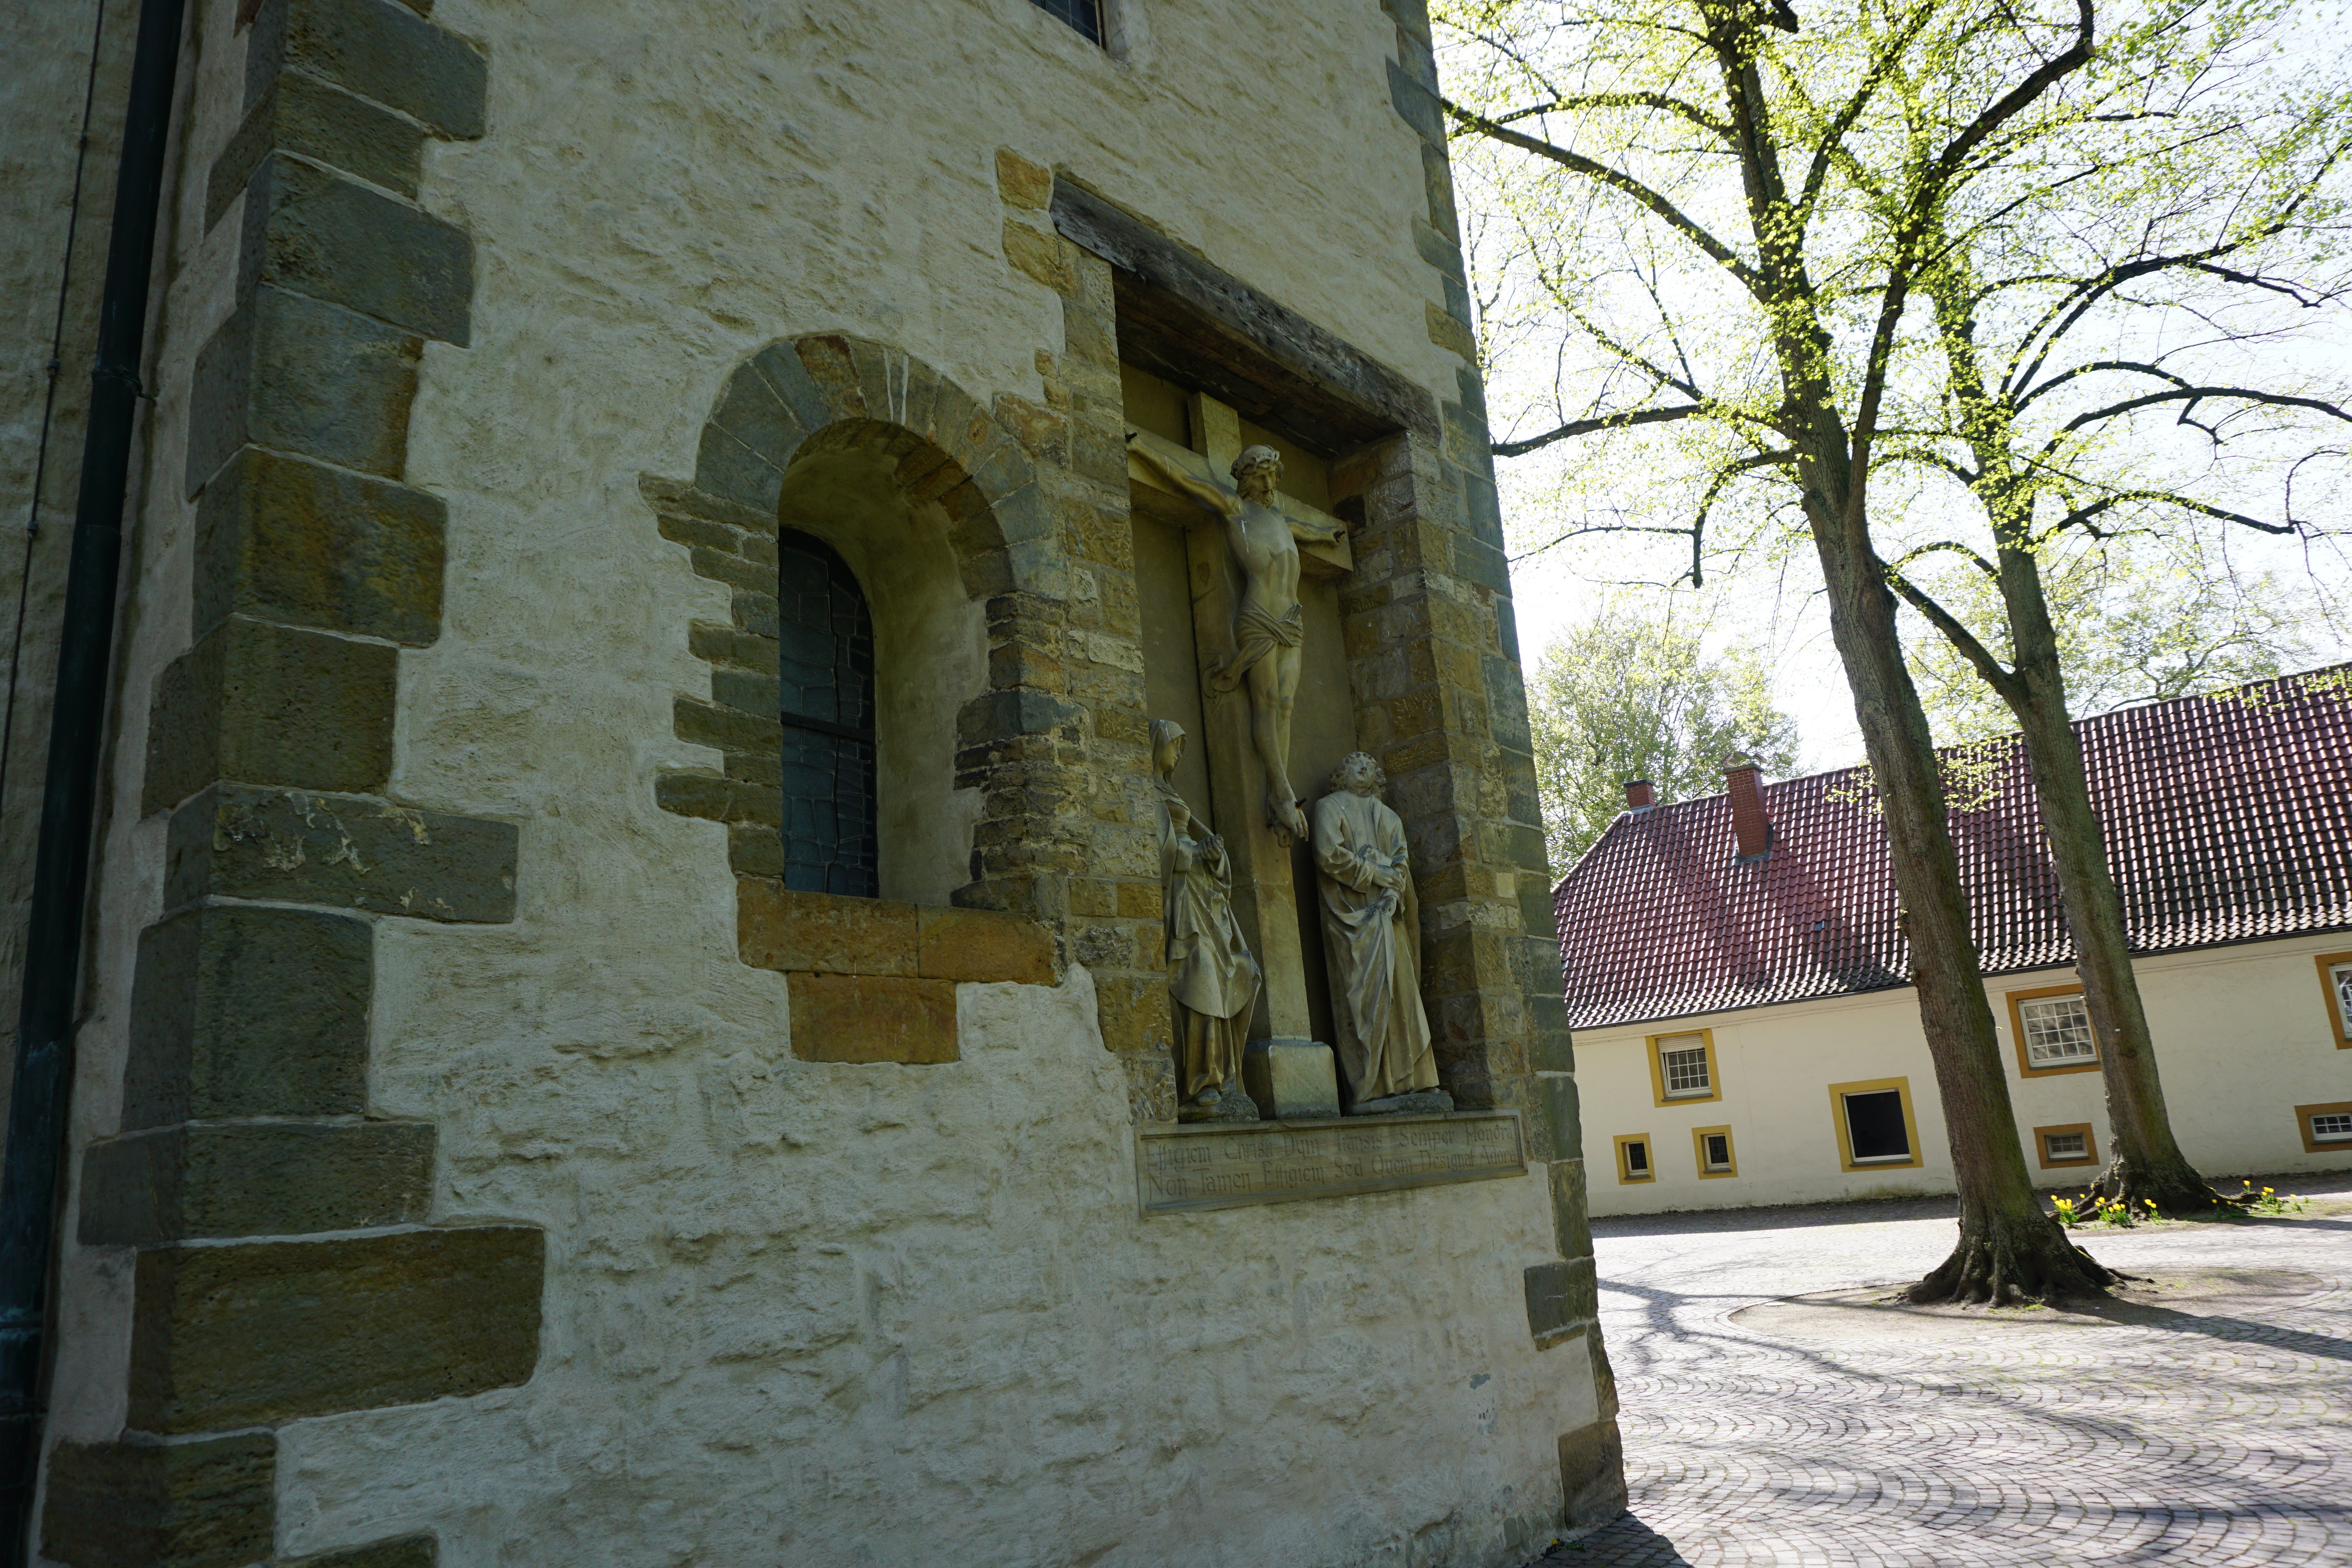 Außenansichten Pfarrkirche St. Laurentius in Clarholz, Herzebrock-Clarholz
